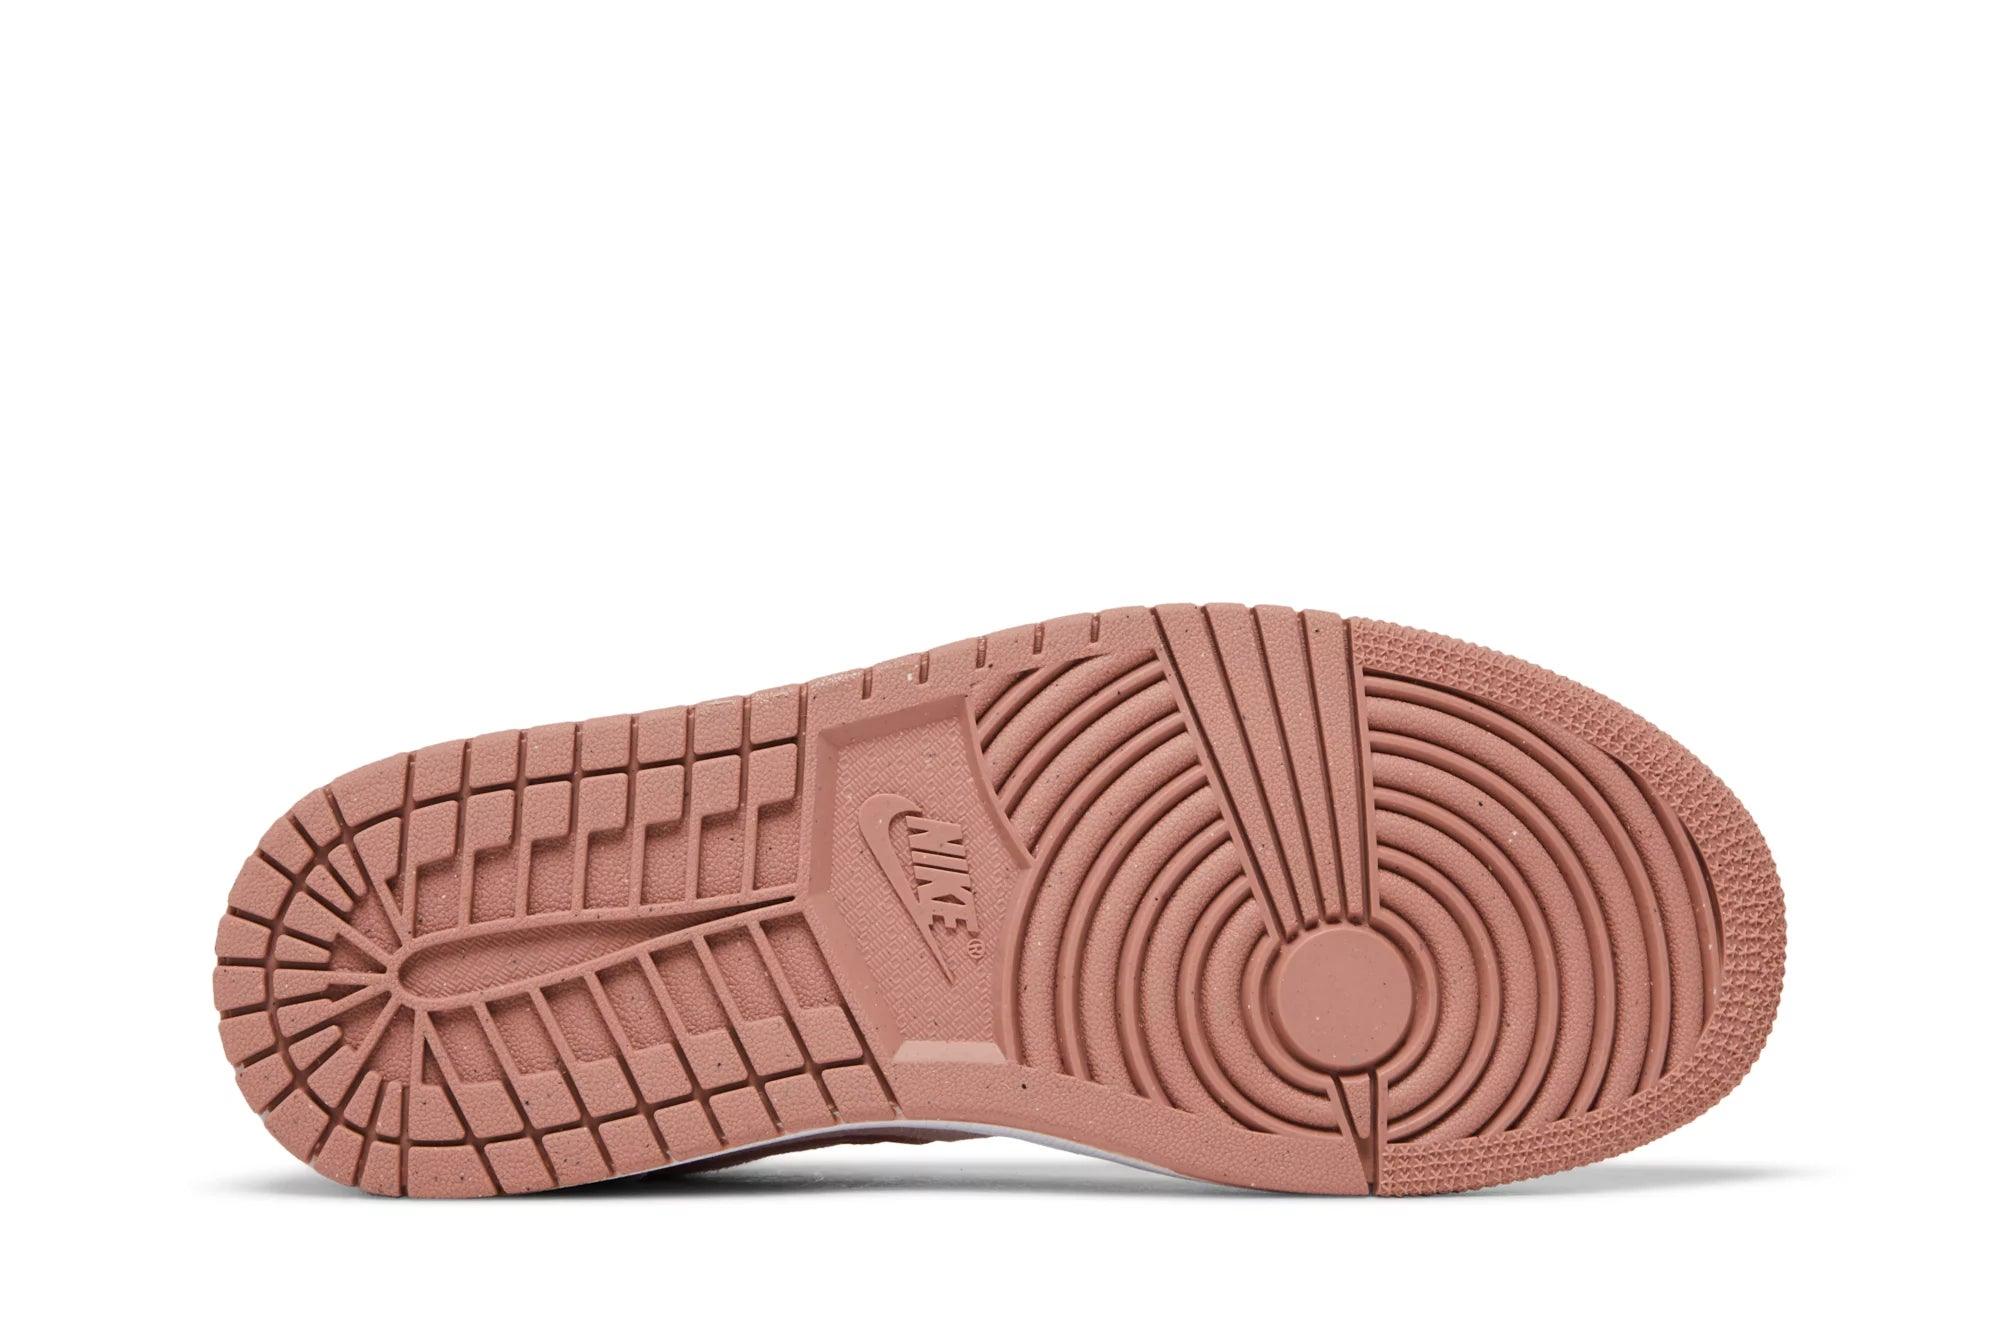 Tênis Air Jordan 1 Low SE Pink Velvet Rosa - LK.Sneakers - DQ8396600